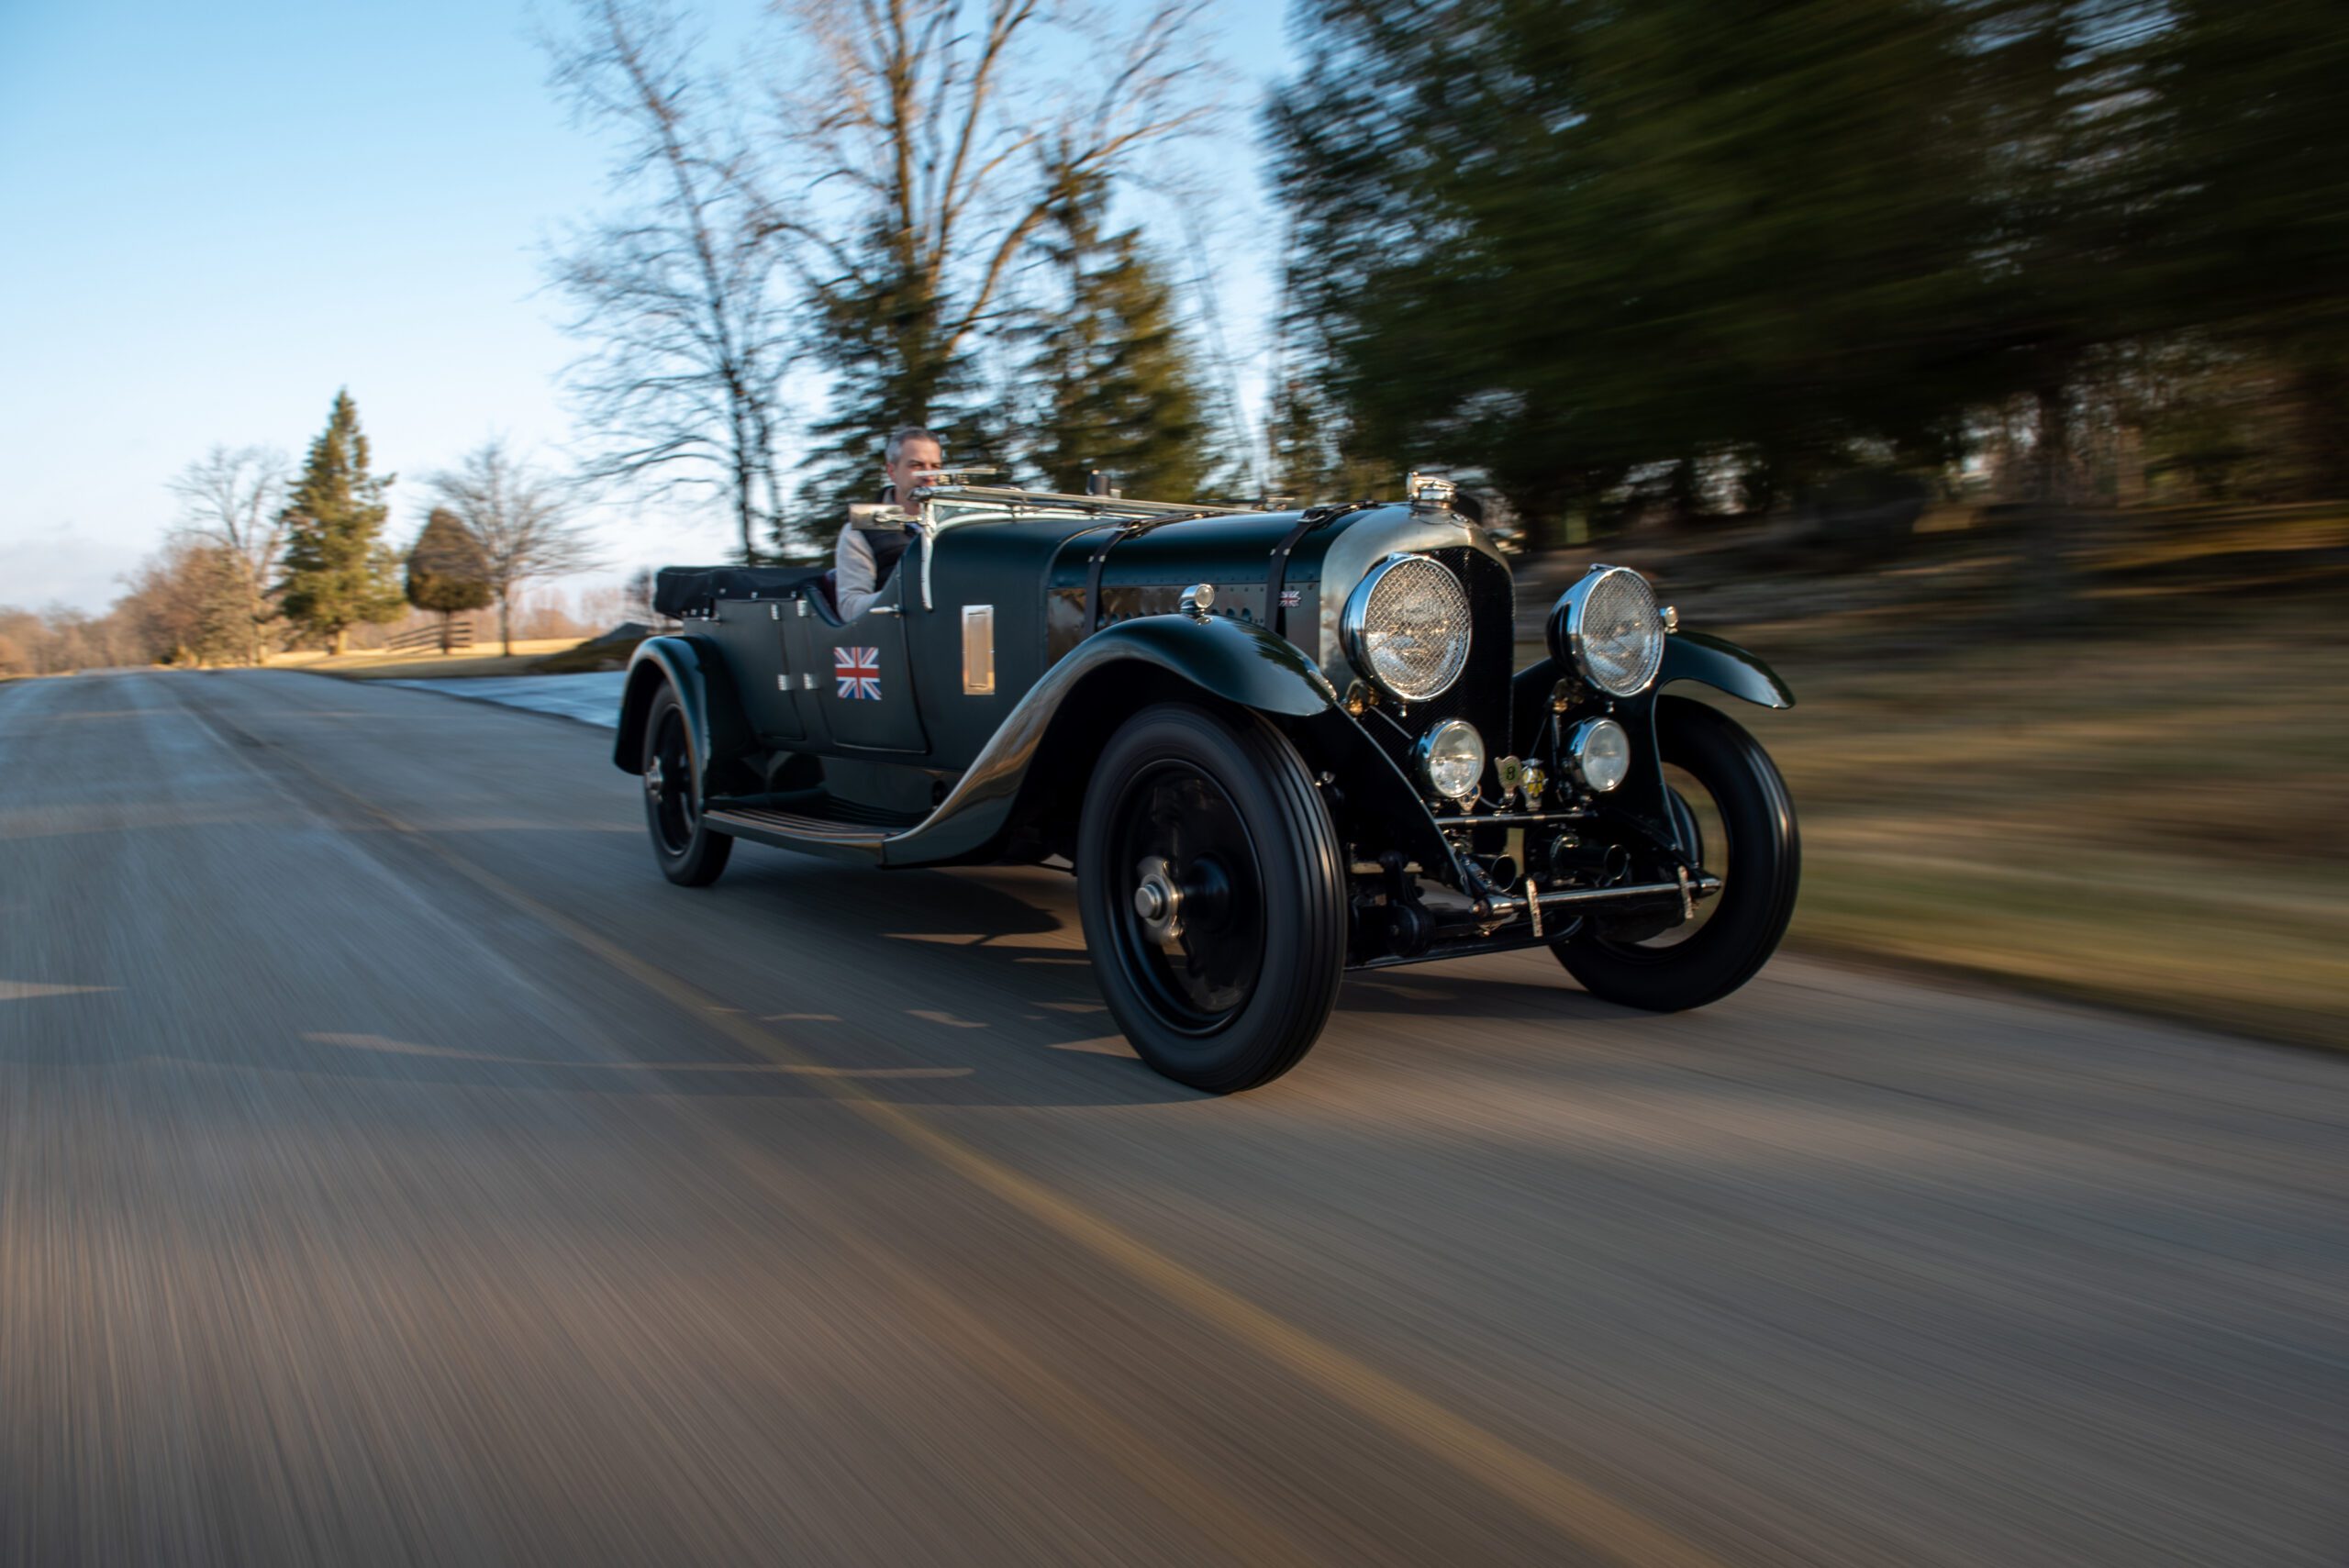 1929 Bentley 4½-Litre Tourer by Cadogan, 1929 Bentley 4½-Litre Tourer by Cadogan, Bentley, Bentley 4½-Litre